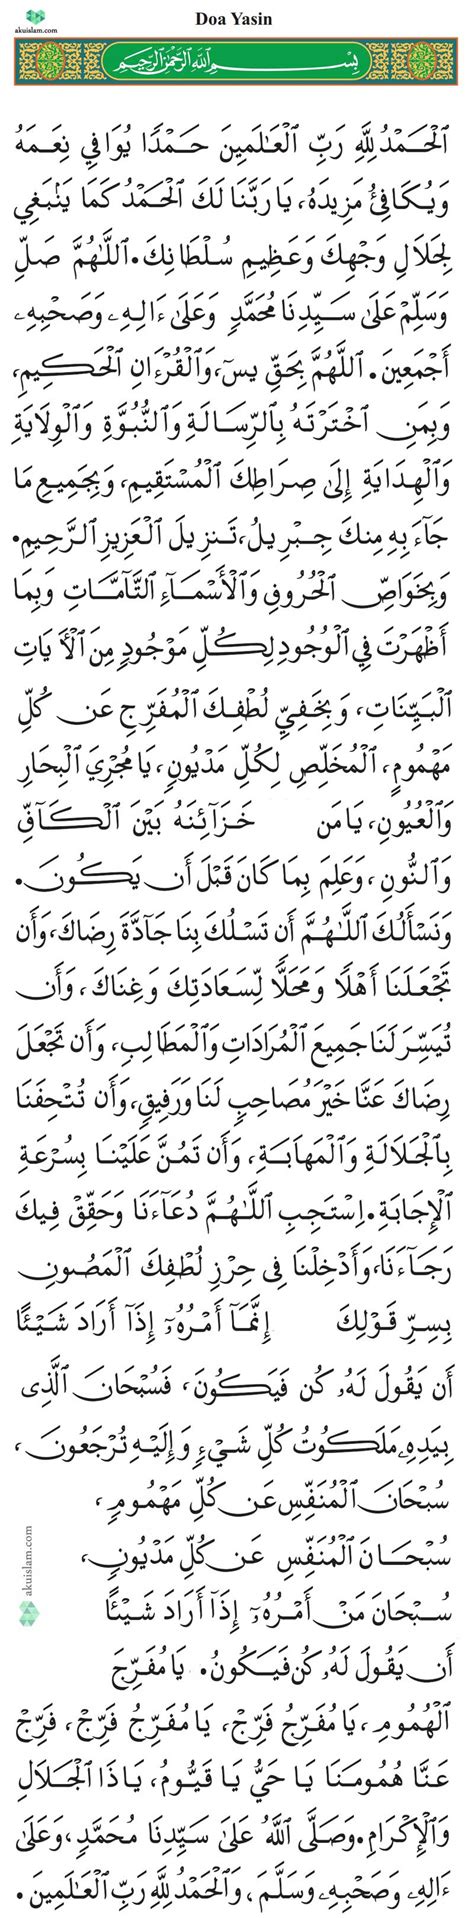 Doa Sebelum Dan Selepas Baca Quran Doa Yasin Adab Kelebihan Membaca